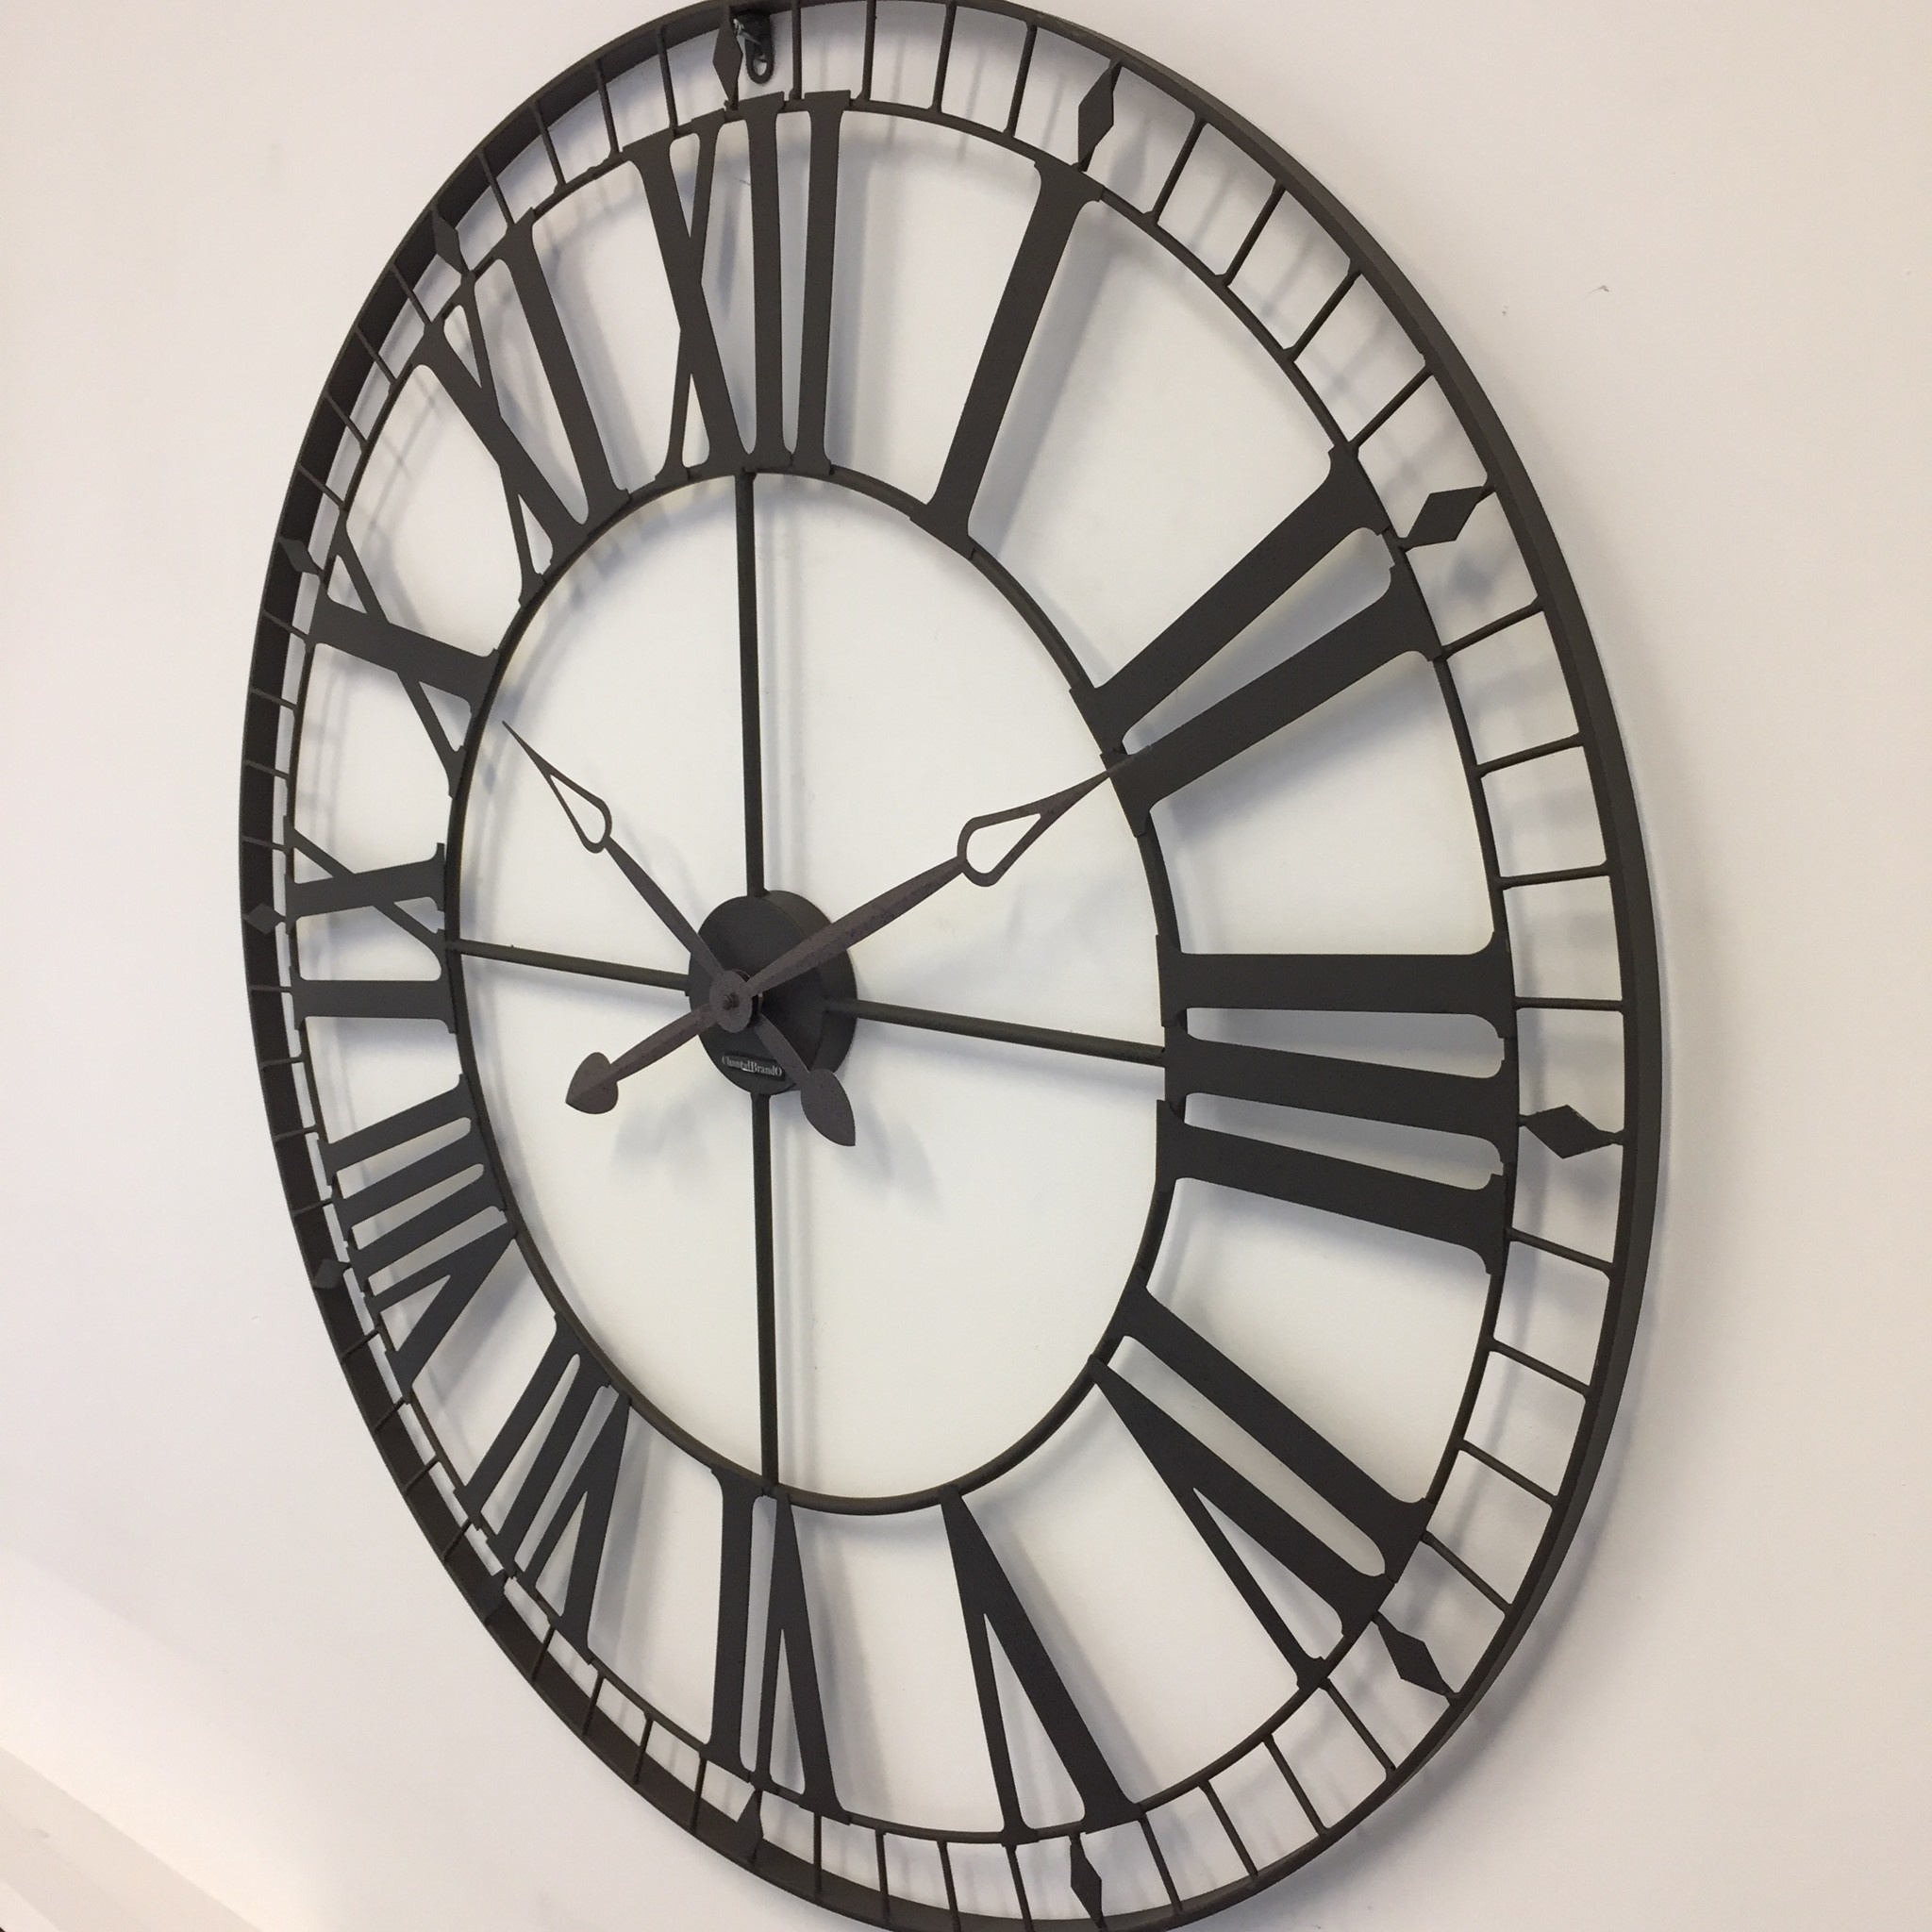 Klokkendiscounter Design - Wall clock Prix de Rome Marrone Vintage Industrial